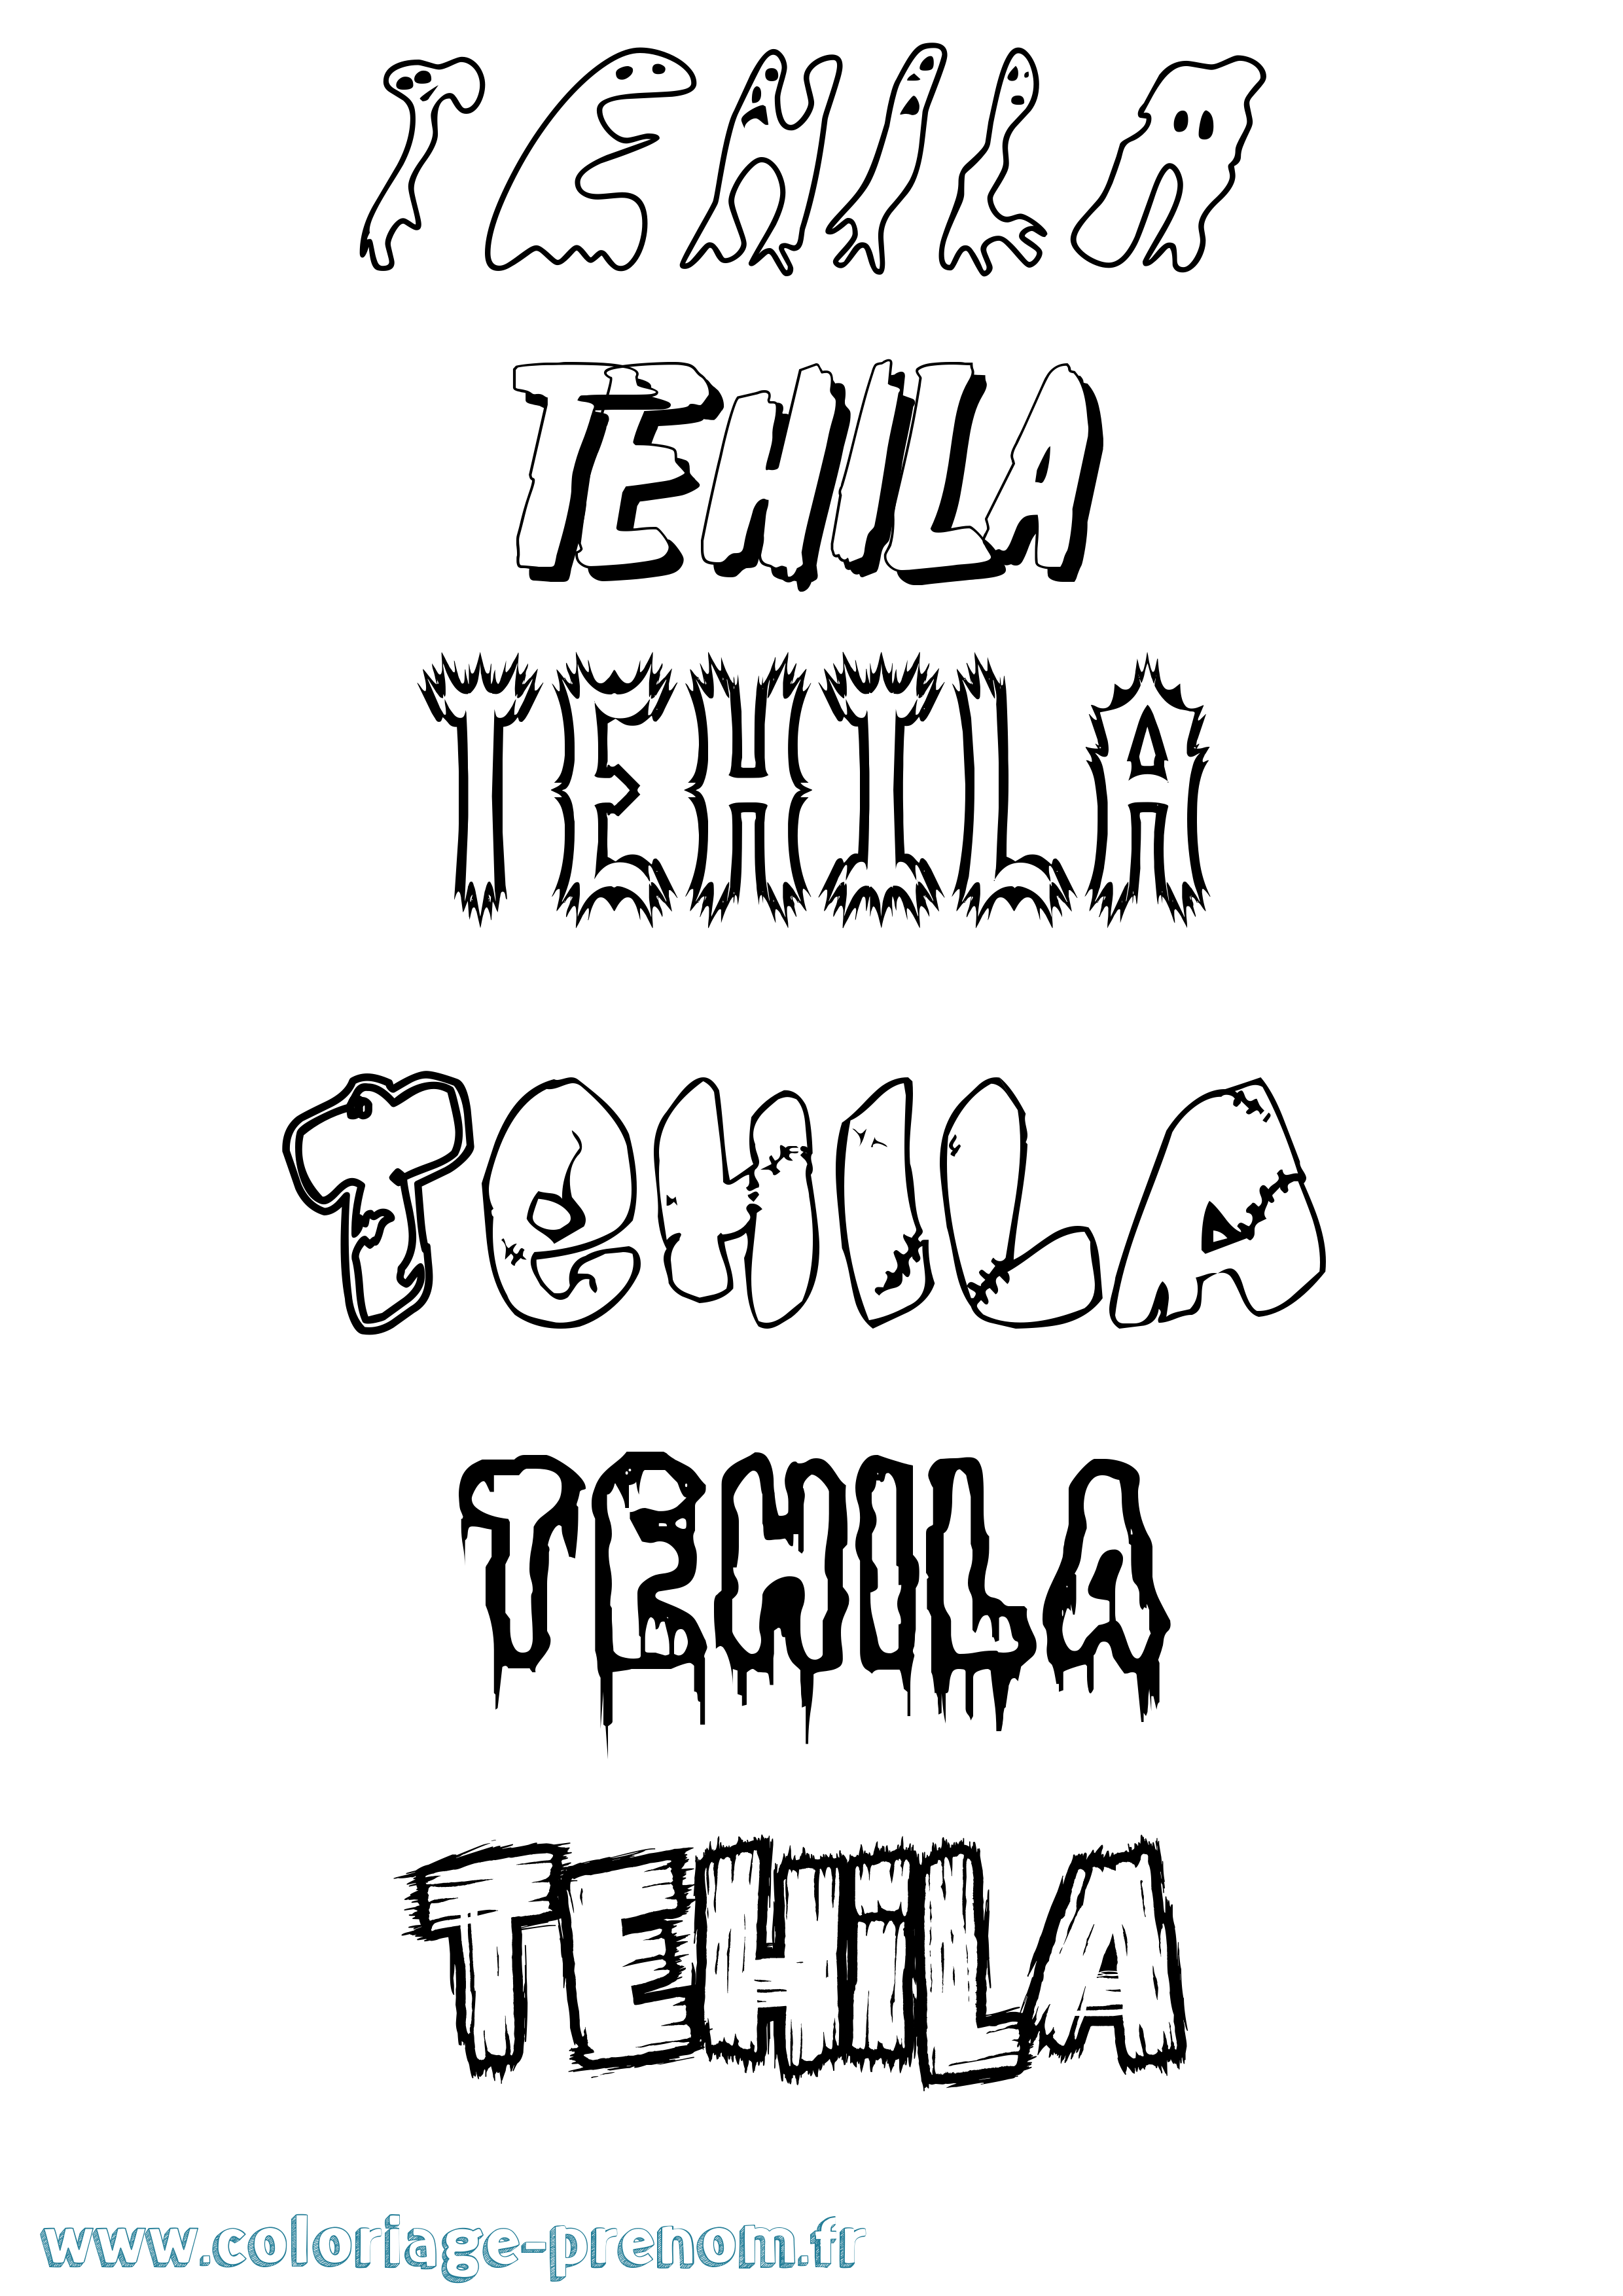 Coloriage prénom Tehila Frisson